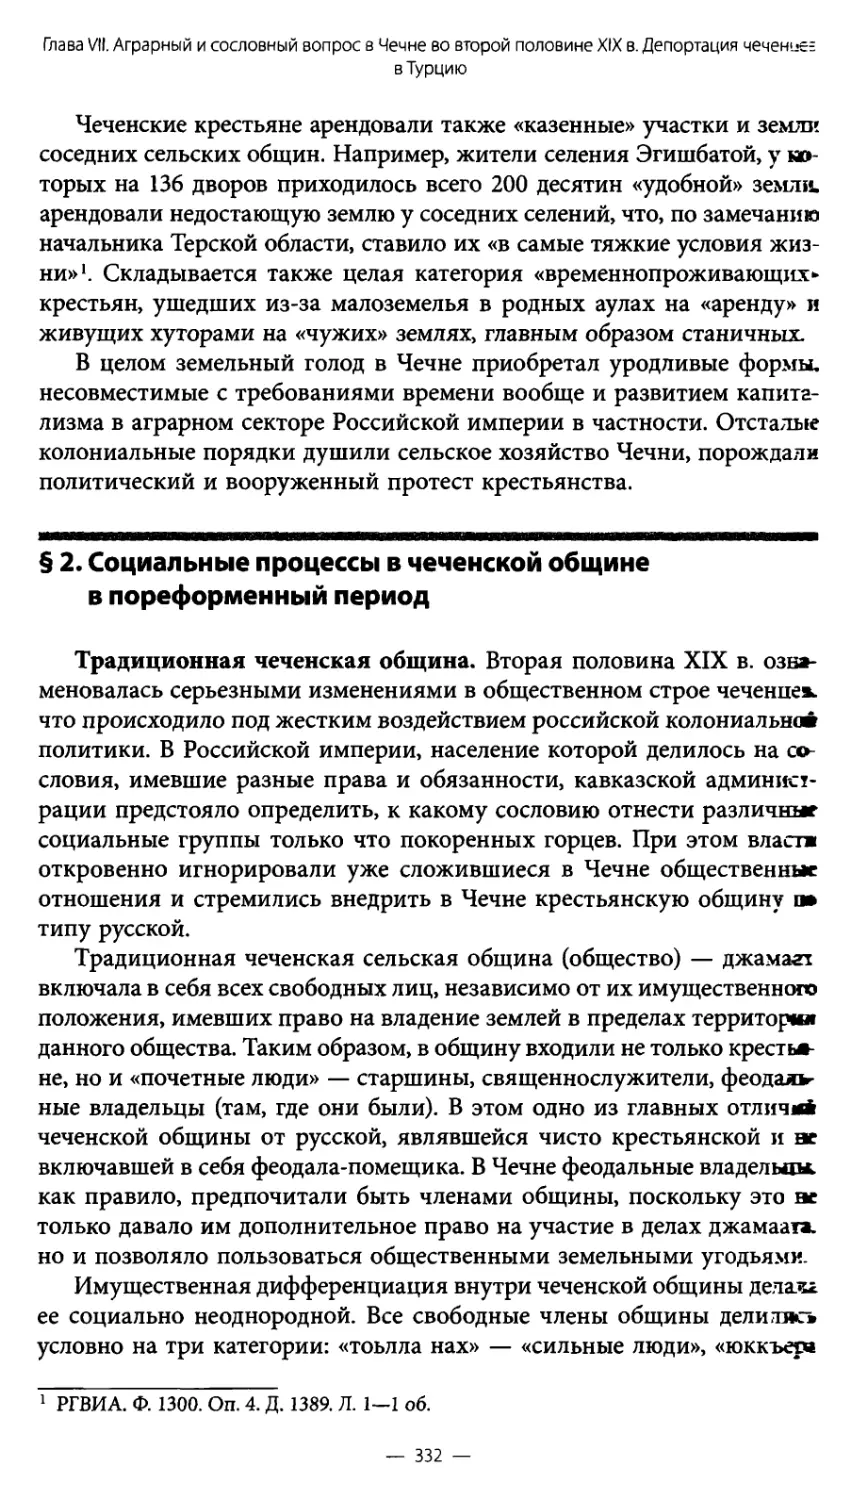 § 2. Социальные процессы в чеченской общине в пореформенный период